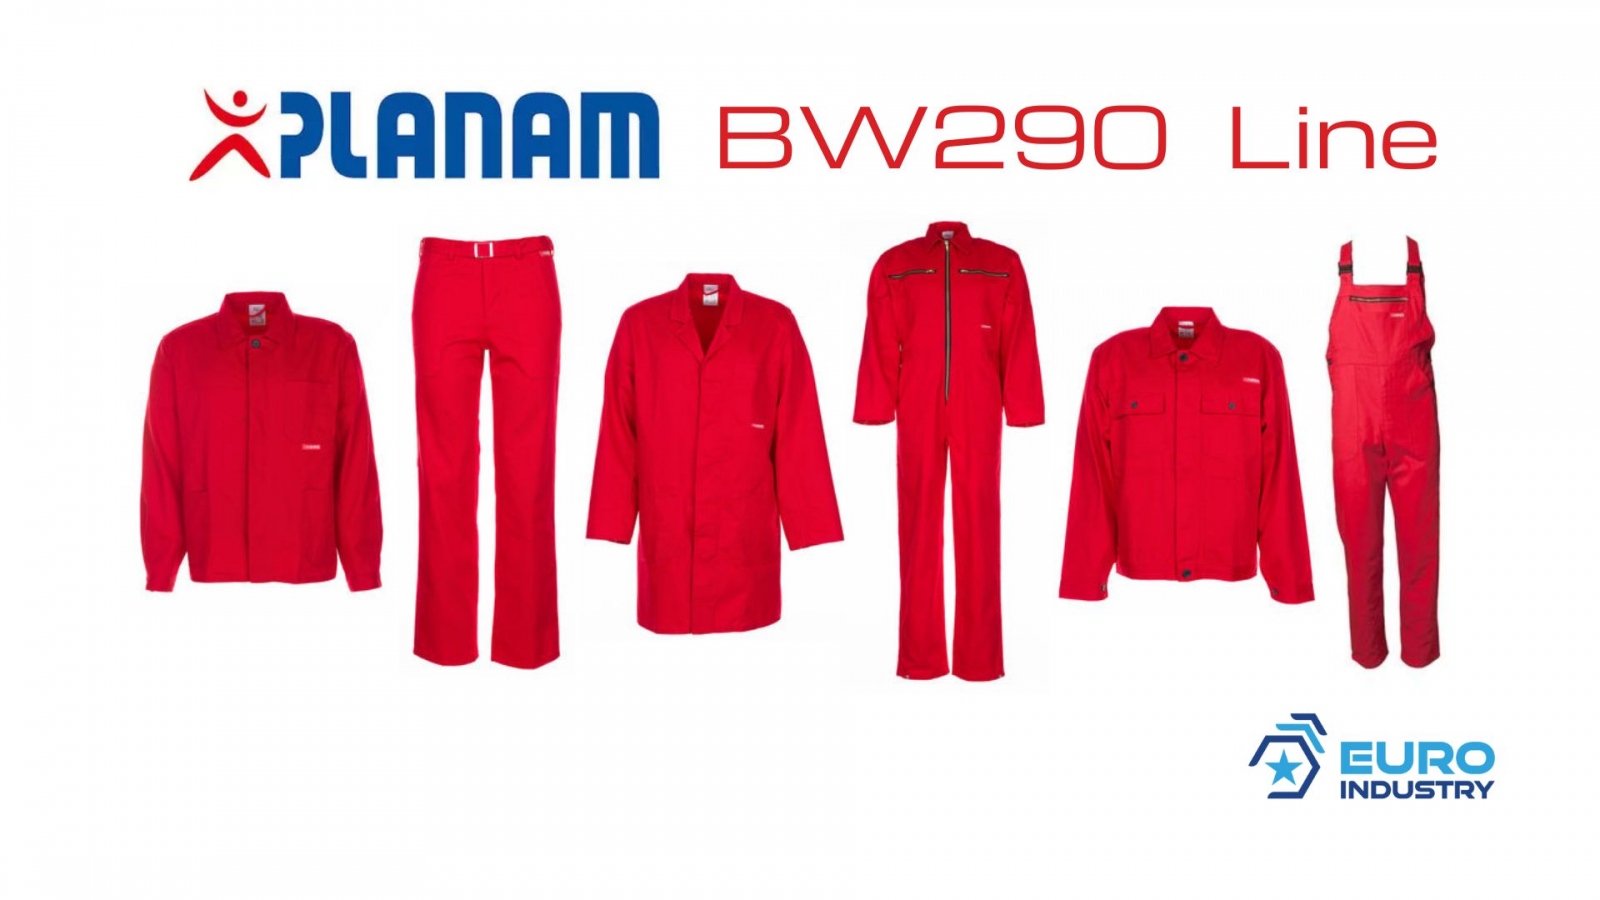 pics/Planam/bw-290/planam-bw-290-linie-mittelrot-baumwolle-details.jpg